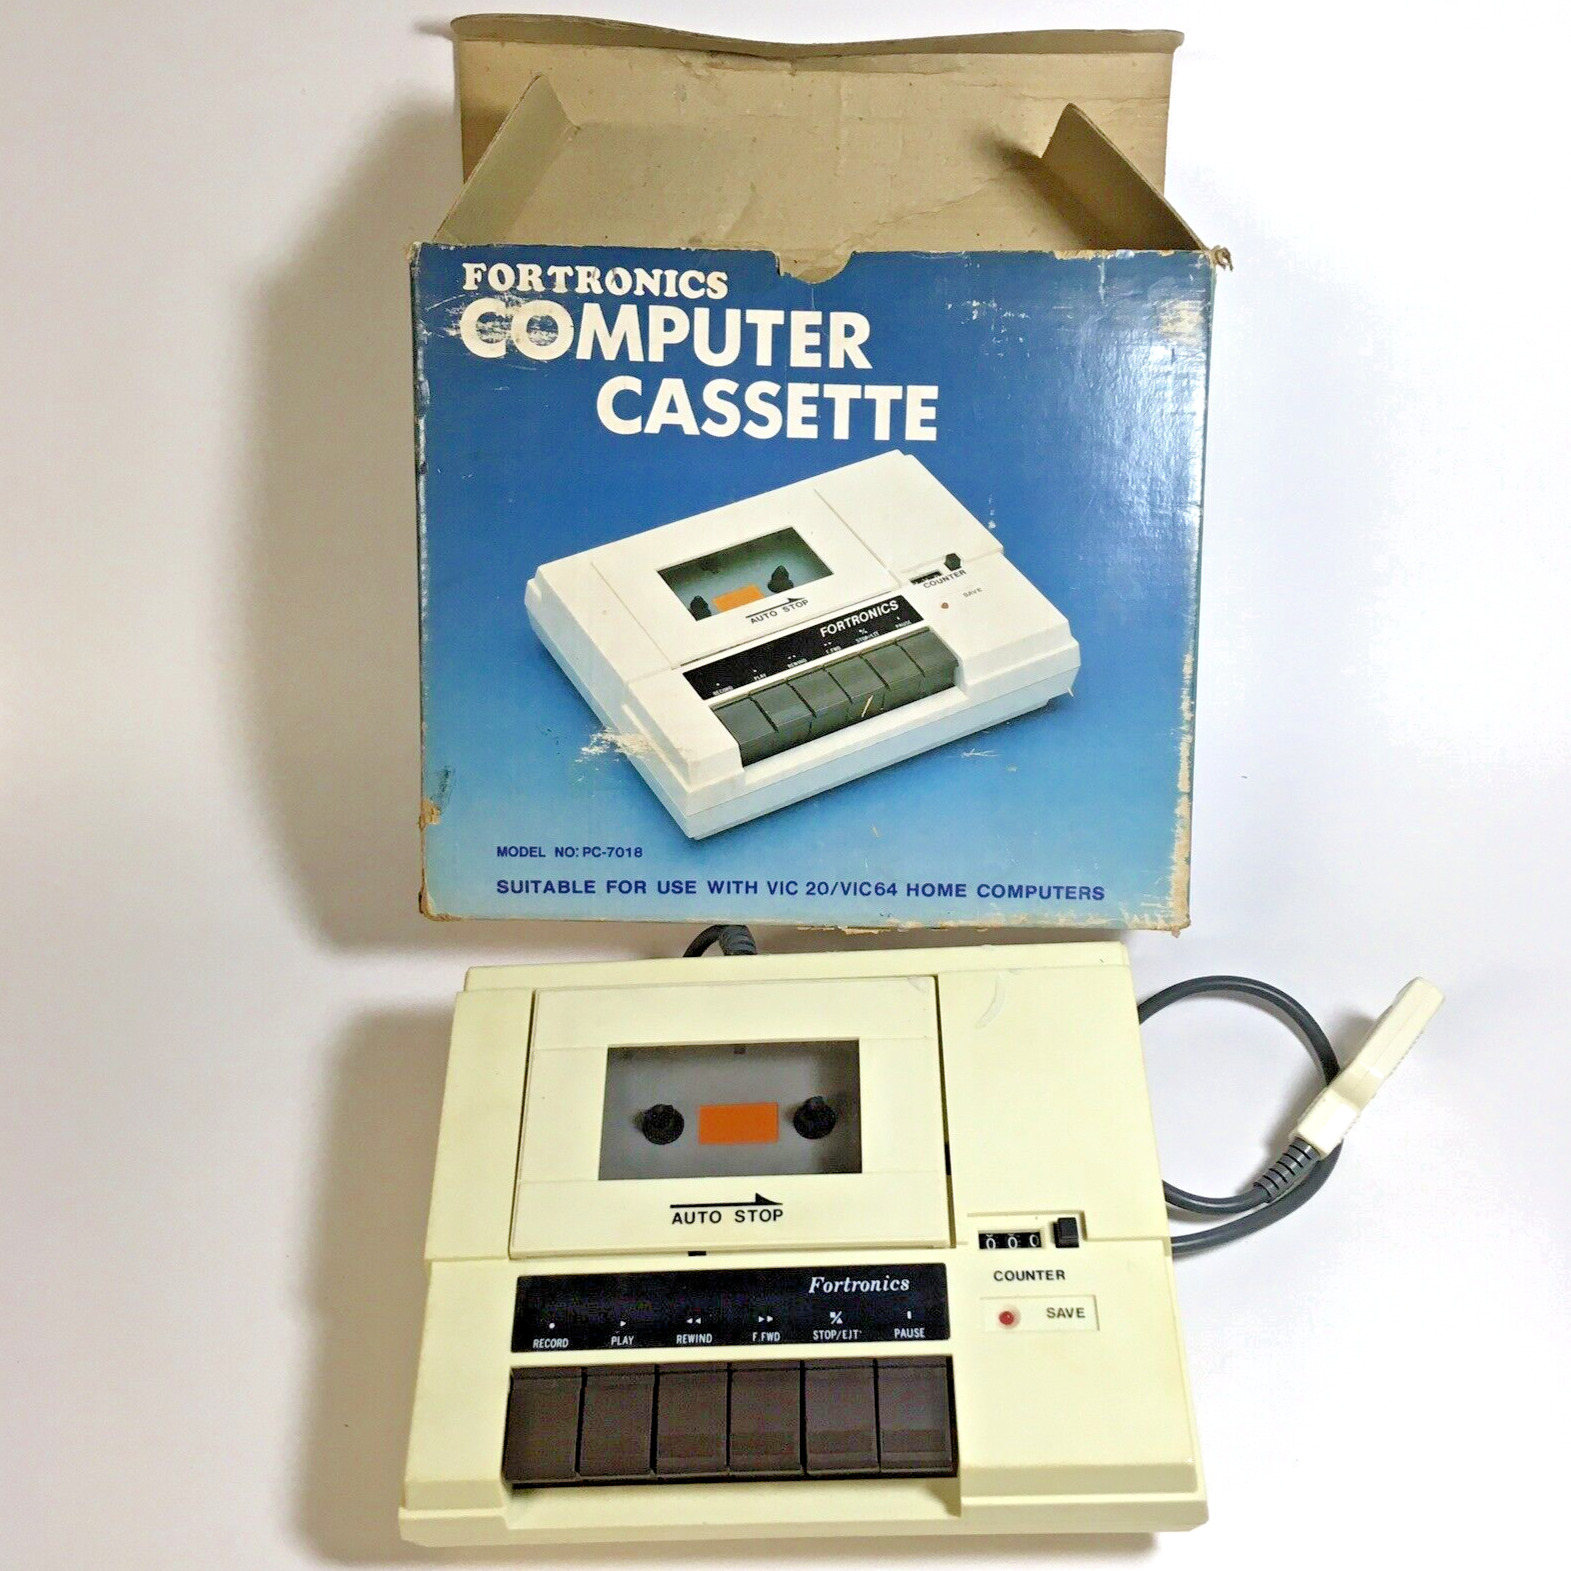 Fortronics PC-7018 Computer Cassette Data Unit w/ Box for VIC 20 VIC64 Vintage